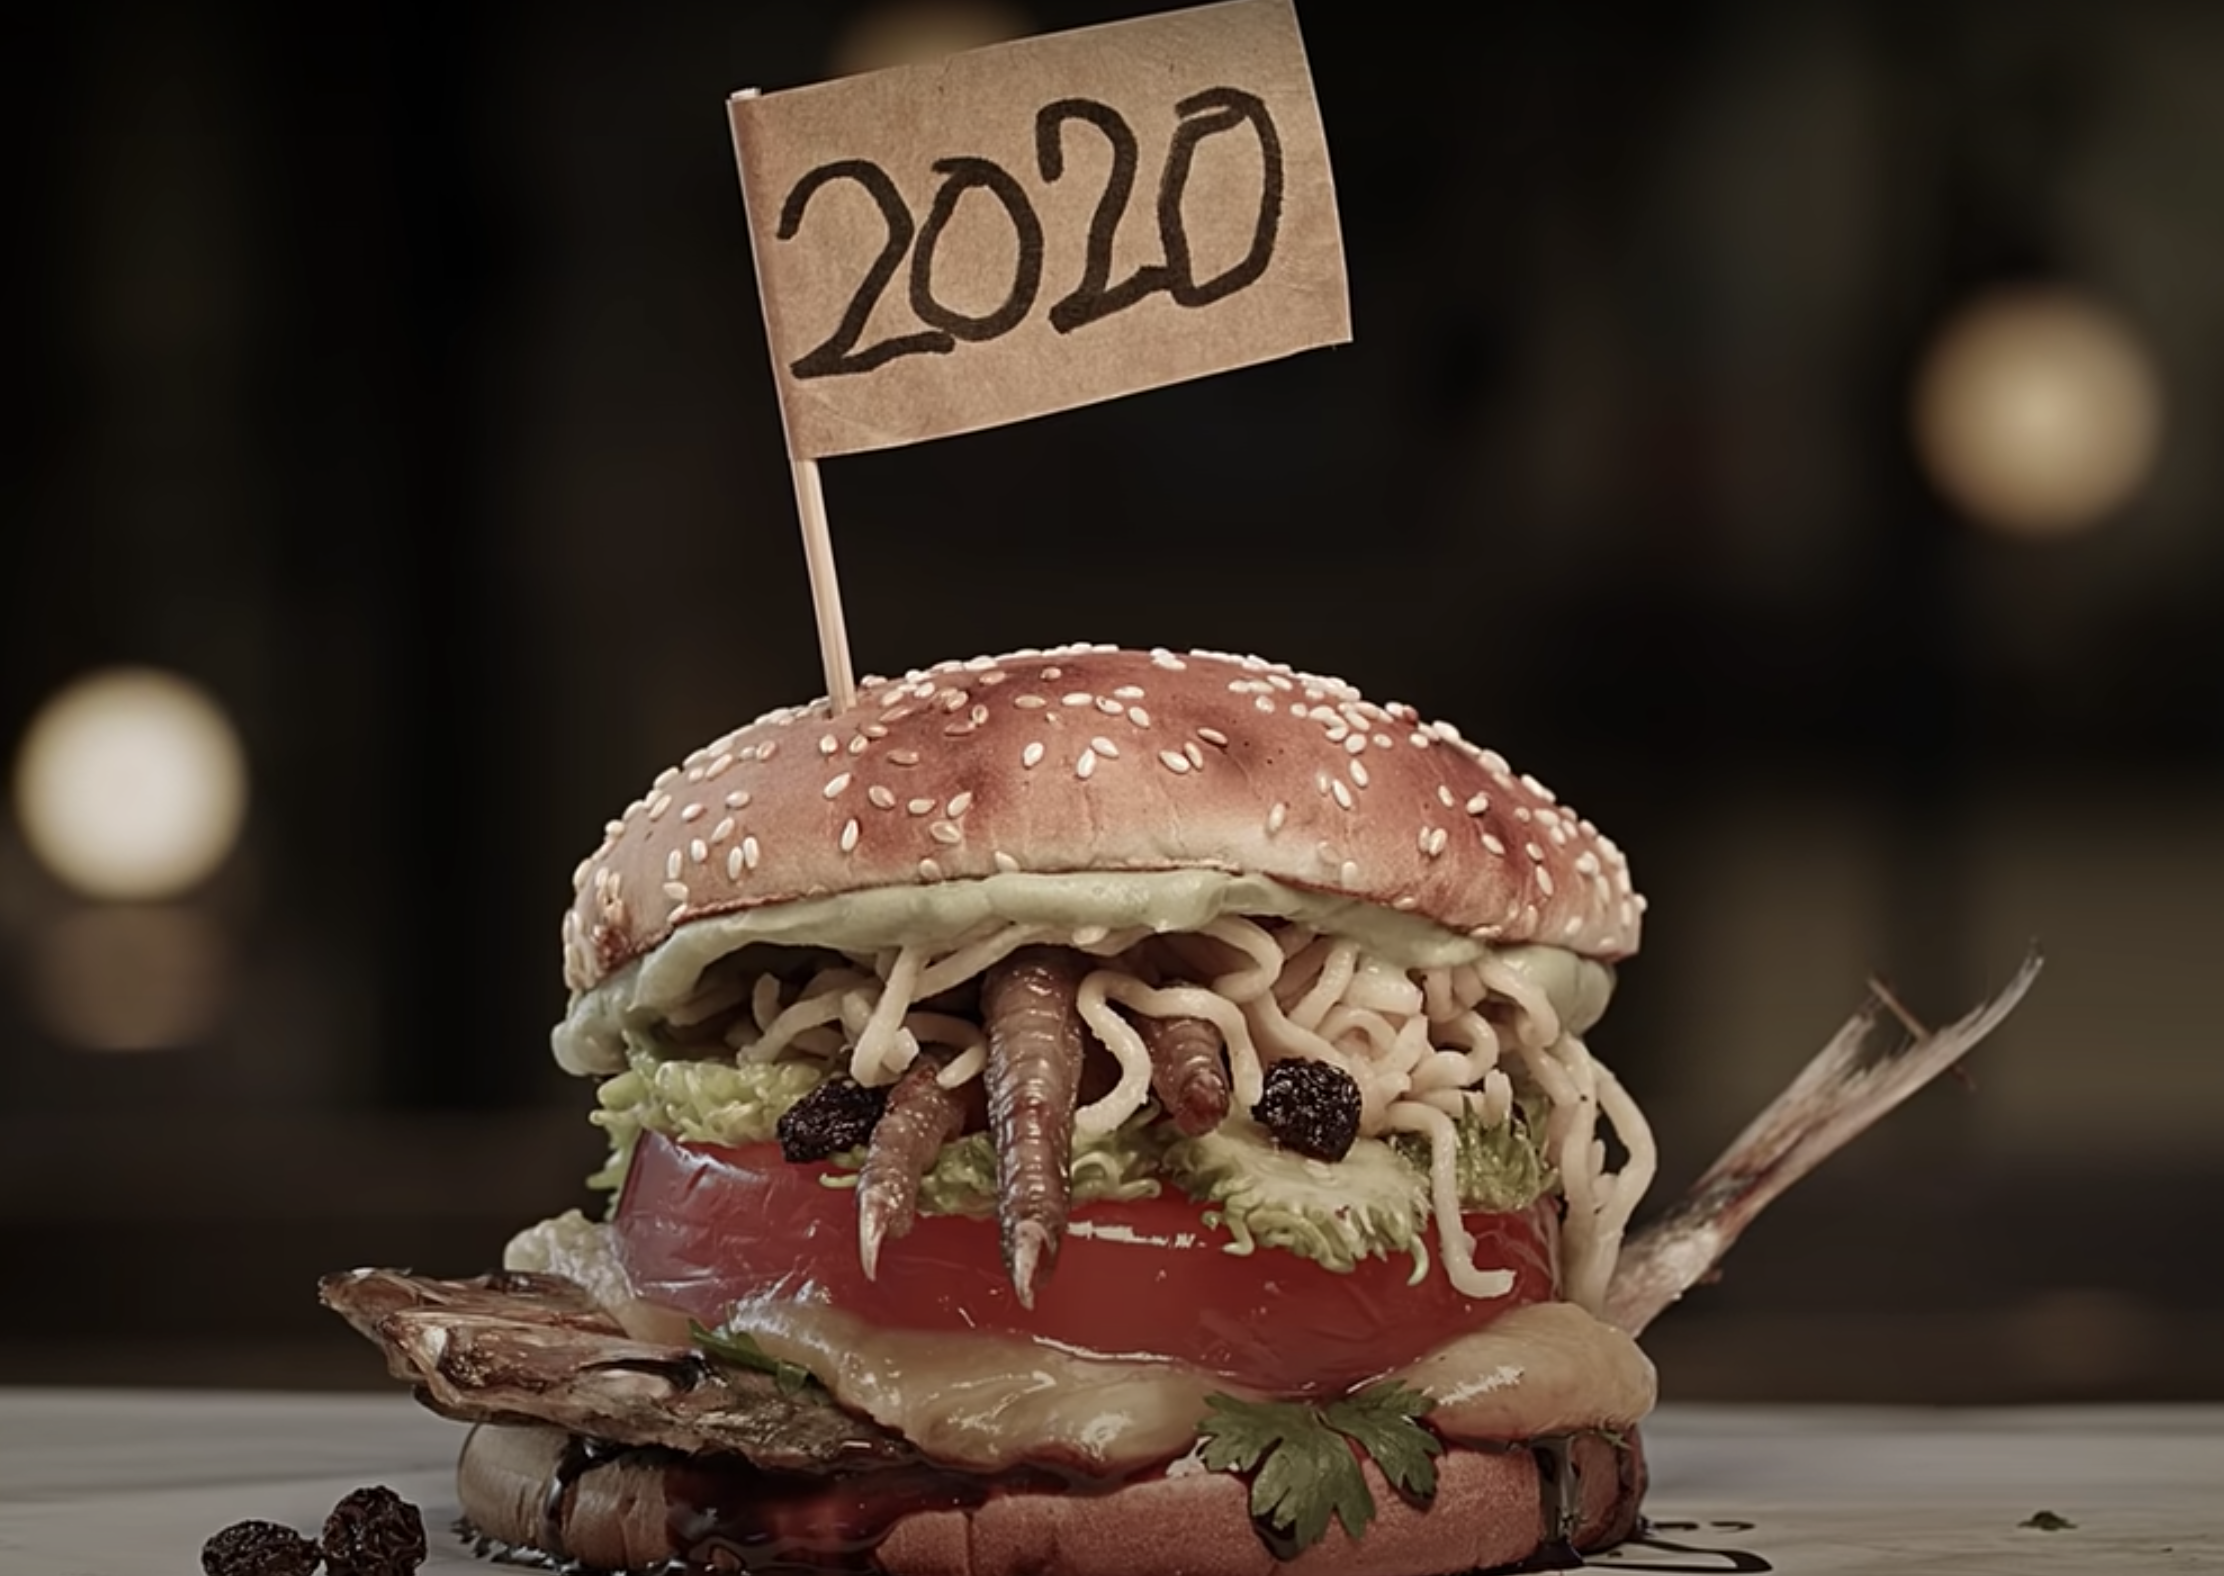 Burger King Brazil Reimagined 2020 As A Burger